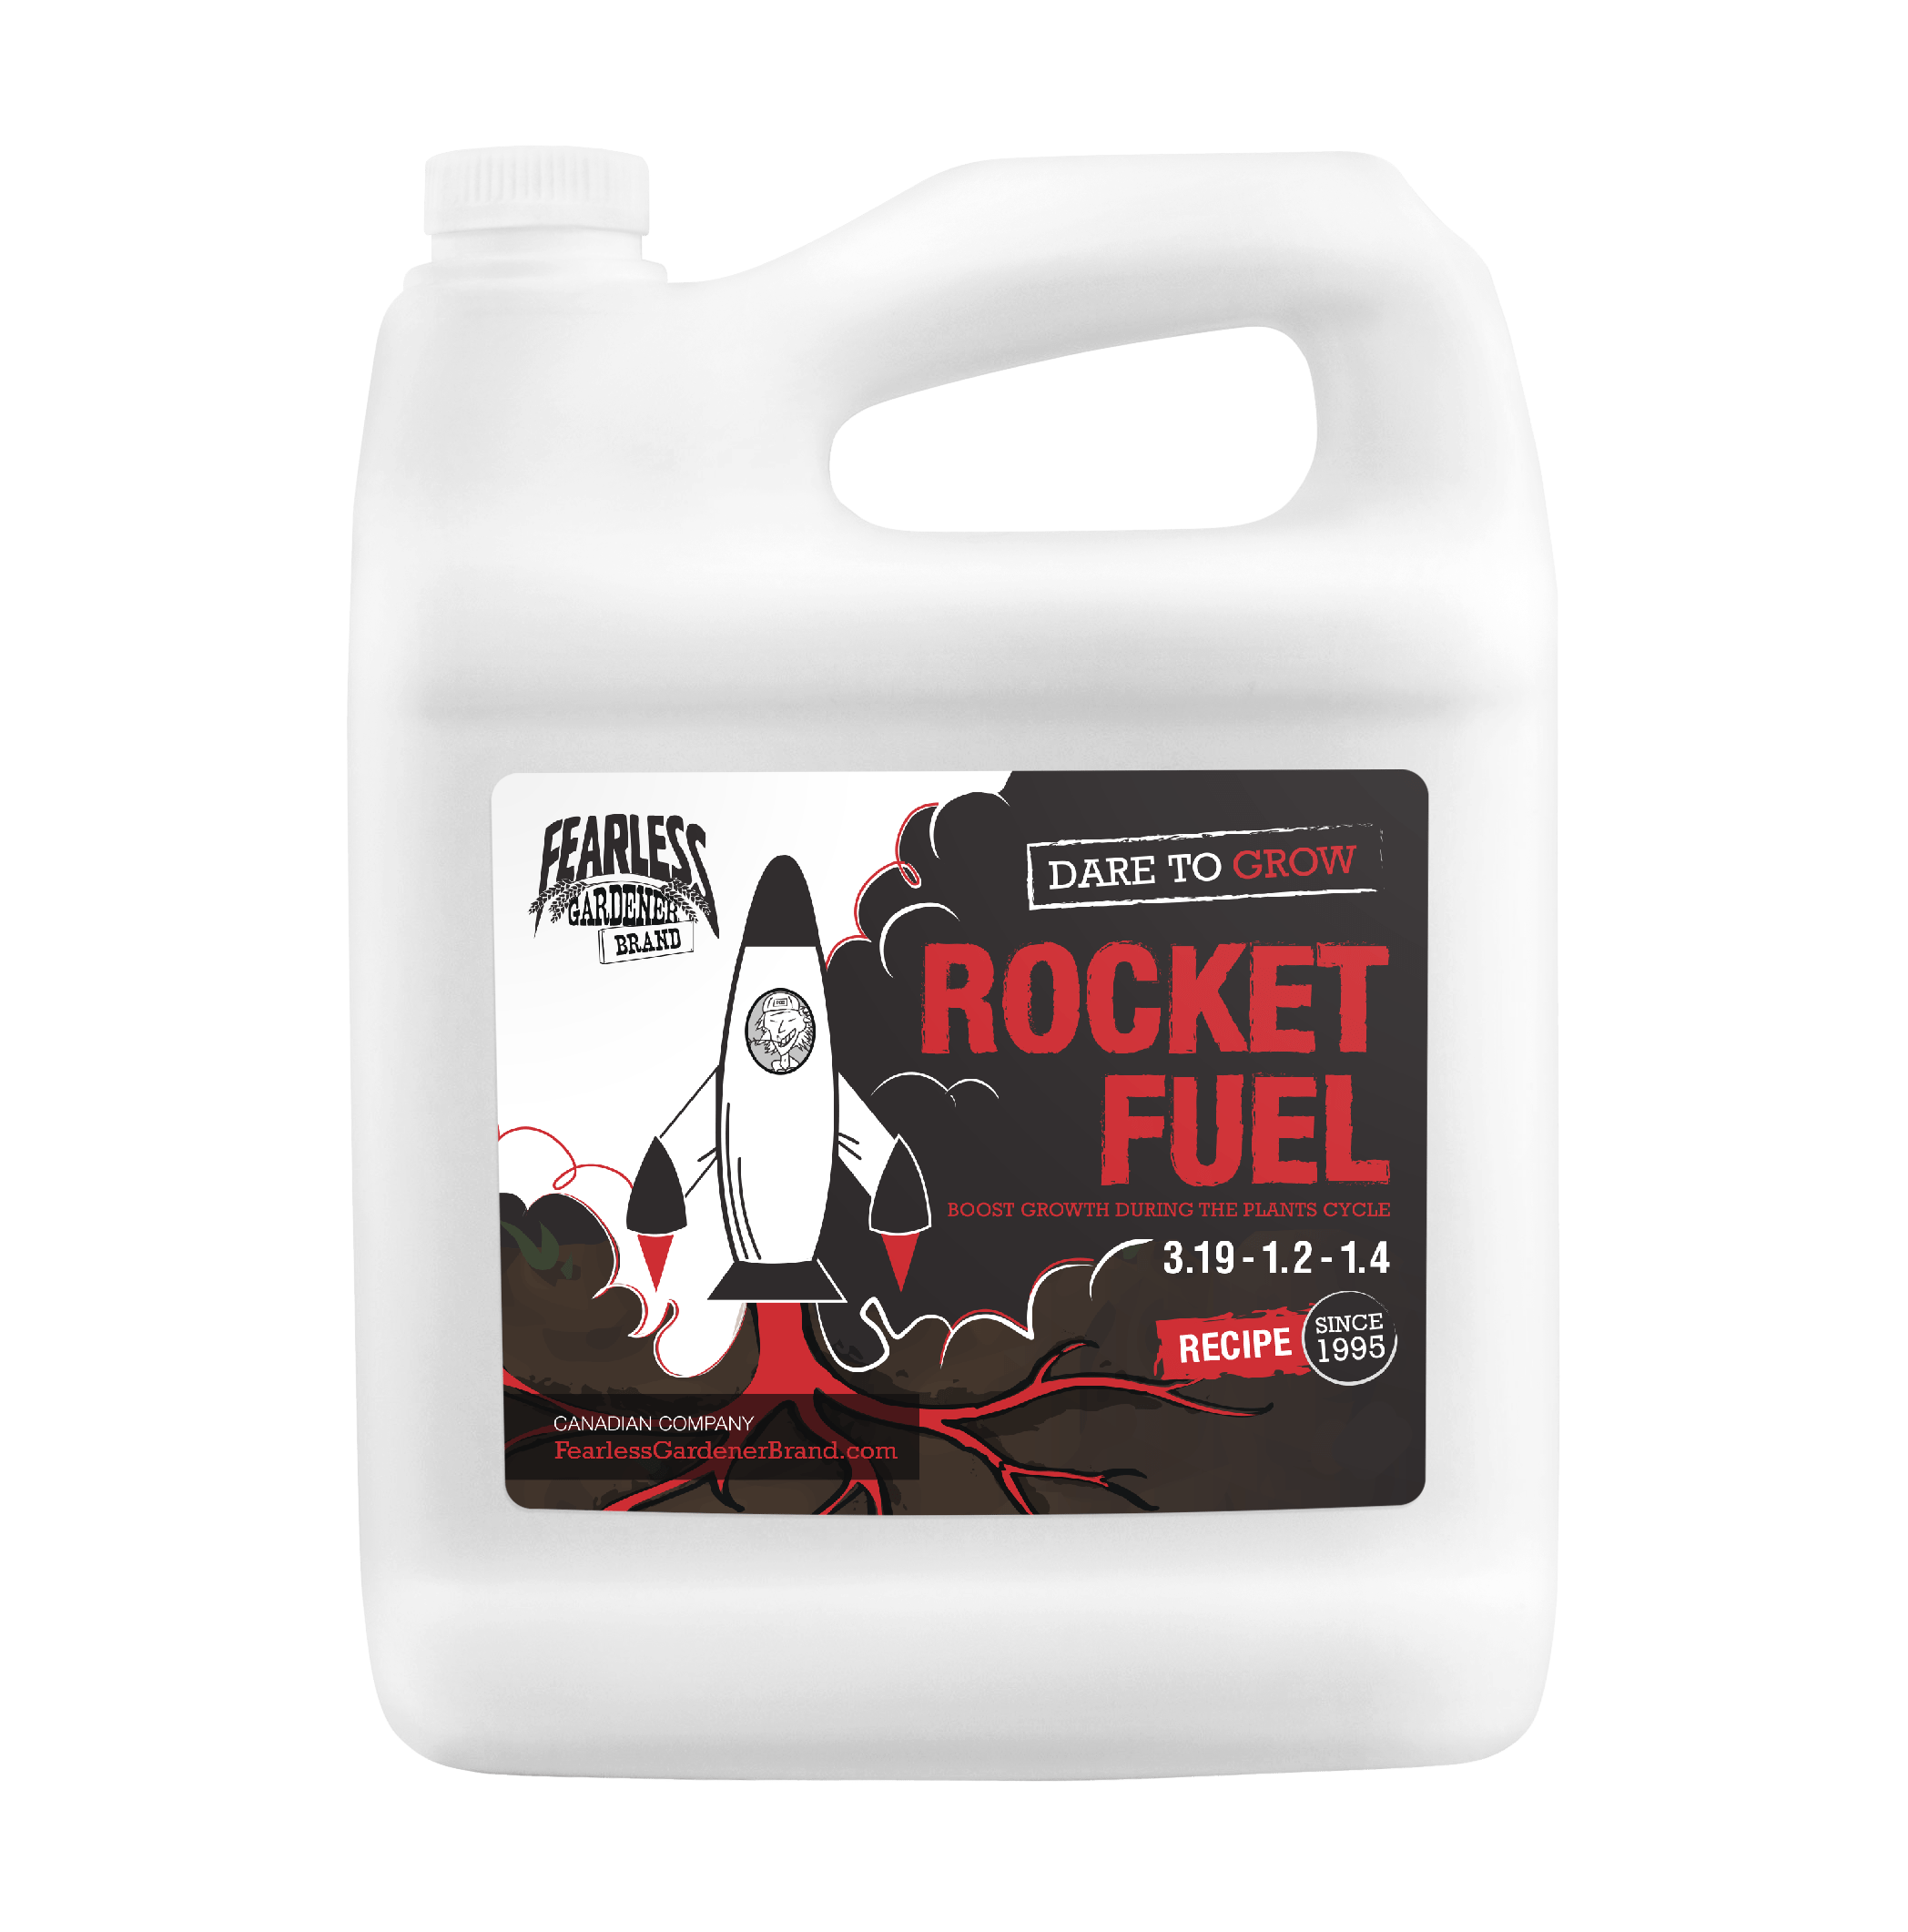 Dare To Grow - Rocket Fuel [3.19-1.2-1.4] | Fearless Gardener Brand